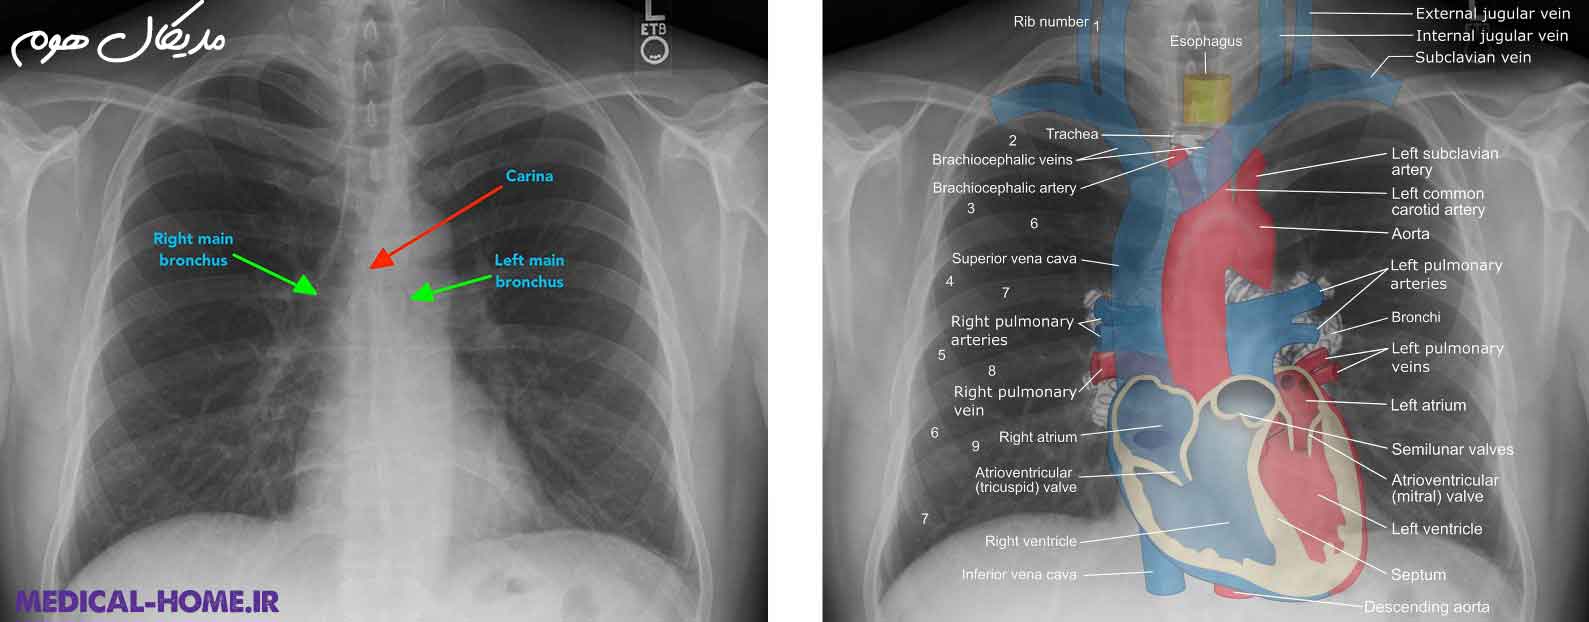 عکس رادیولوژی از قفسه سینه جهت بررسی قلب